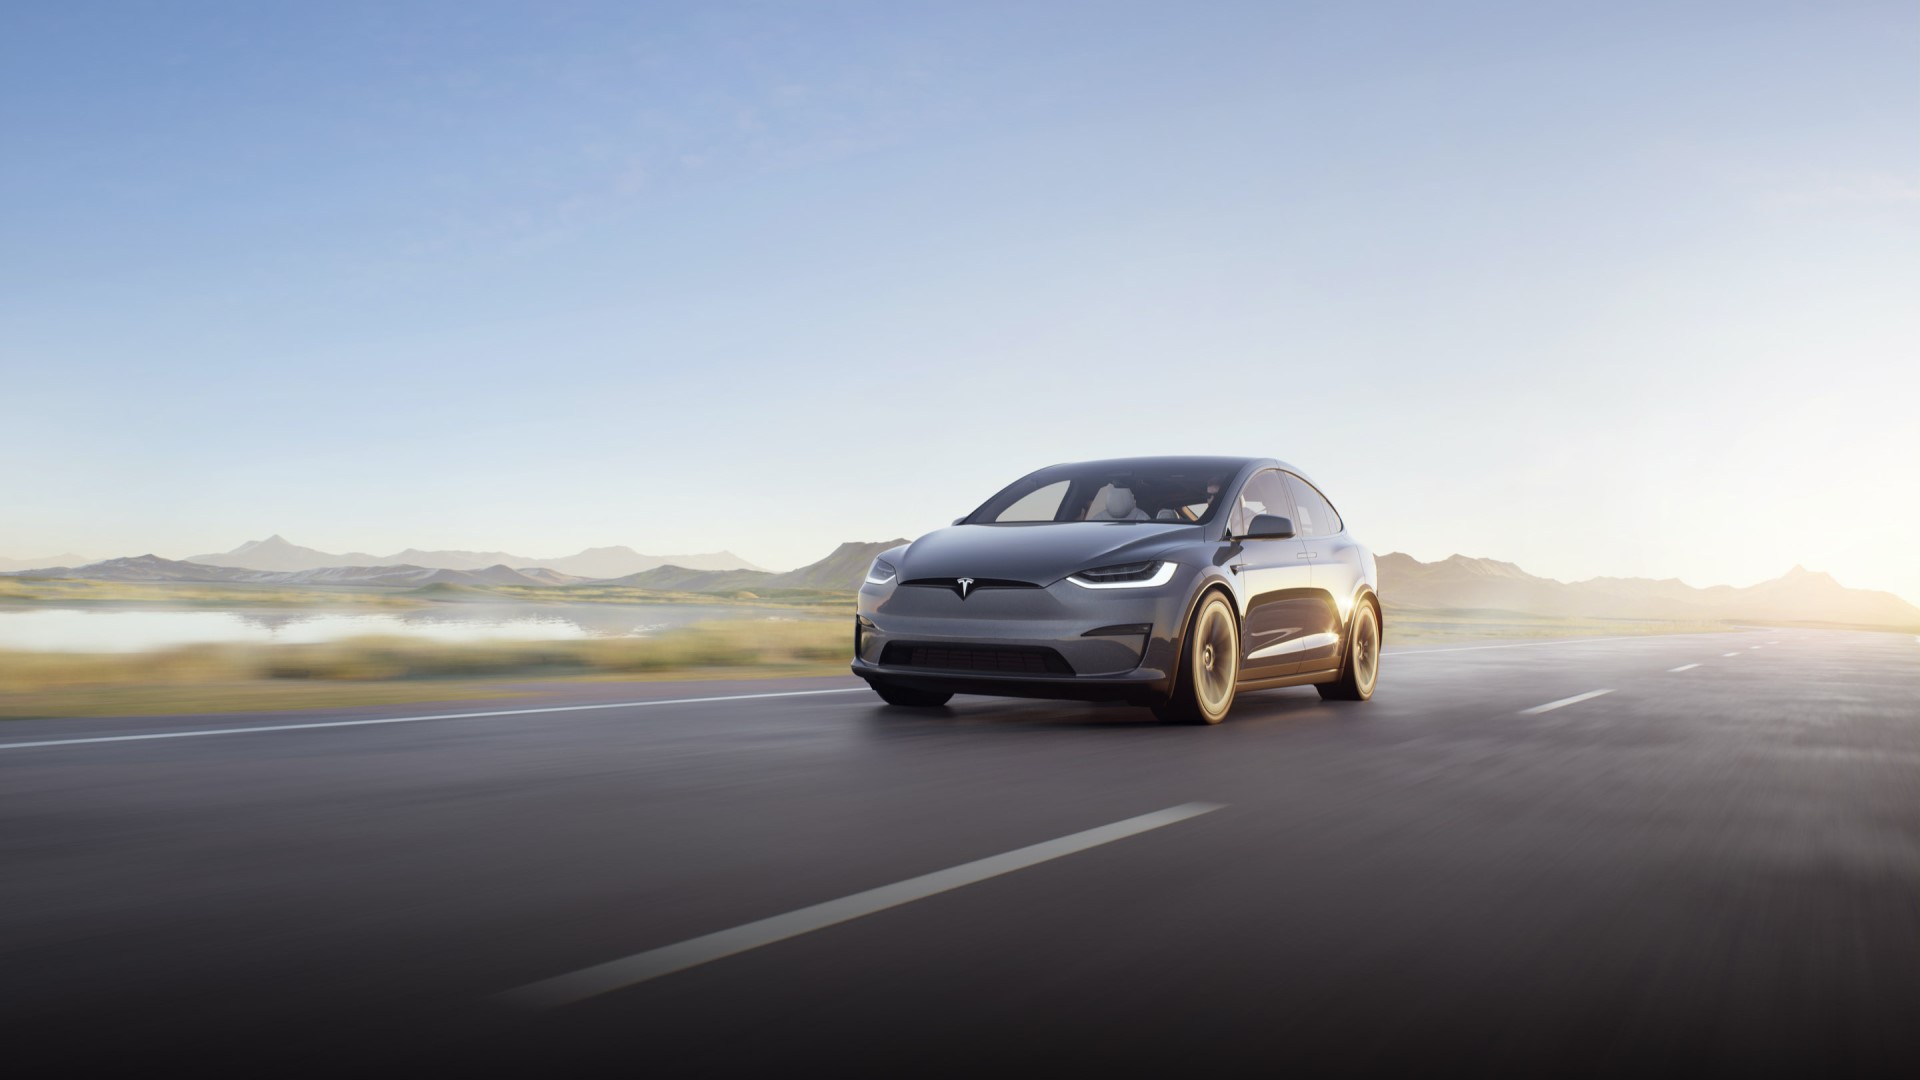 Tesla ถูกวิจารณ์เรื่องการผลิต Model X ปรับปรุงใหม่ที่ล่าช้า